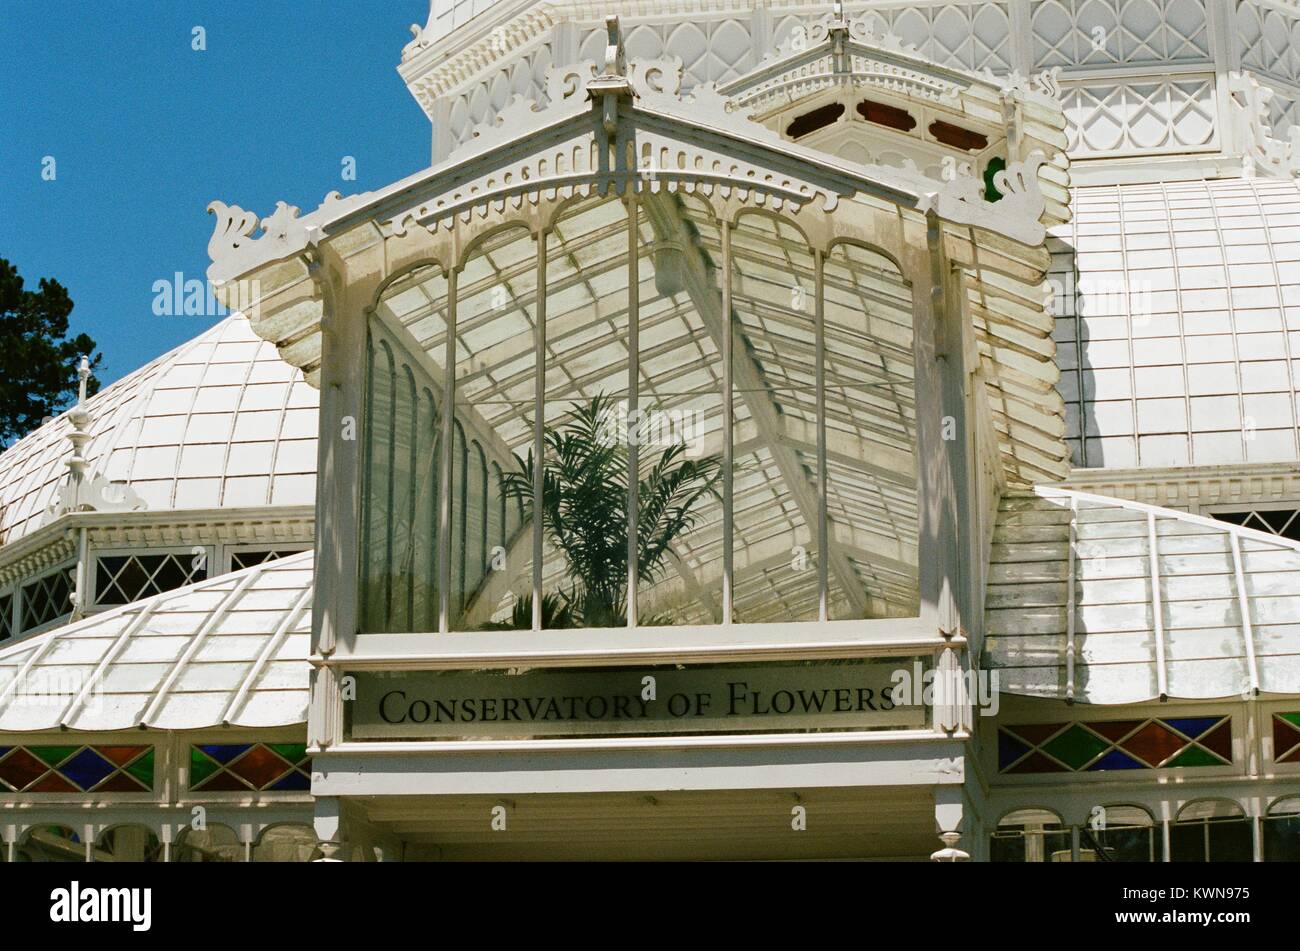 Gros plan de l'entrée principale de l'conservatoire des fleurs, une serre victorienne et conservatoire des fleurs dans le parc du Golden Gate, San Francisco, Californie, avec des vitraux et de lecture de texte Conservatoire des fleurs, le 11 juillet 2017. Banque D'Images